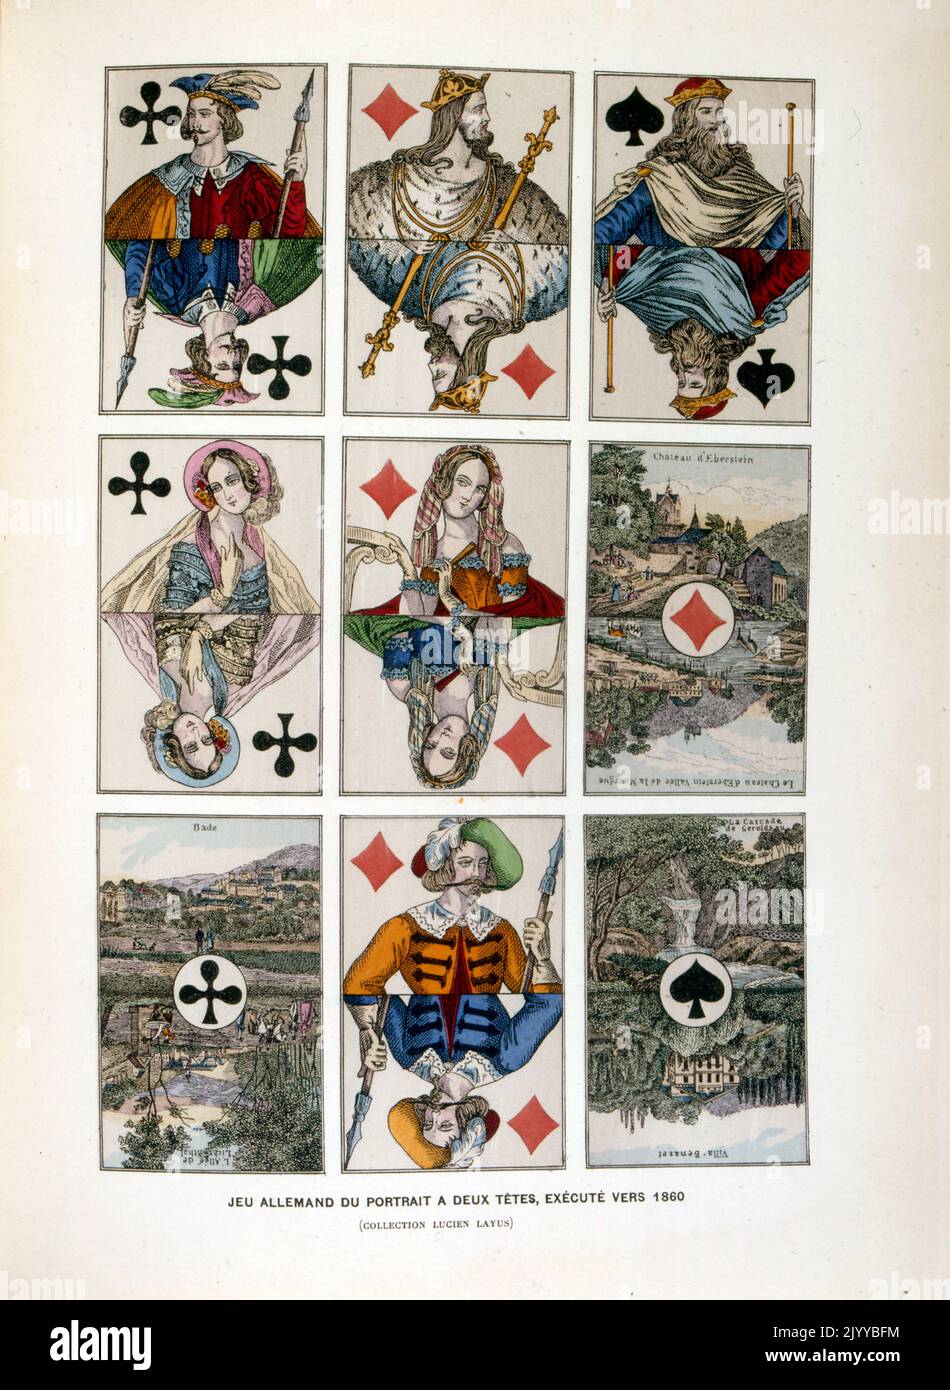 Illustration colorée des cartes à jouer avec deux têtes sur chaque carte de façon miroir faite autour de 1860. Banque D'Images